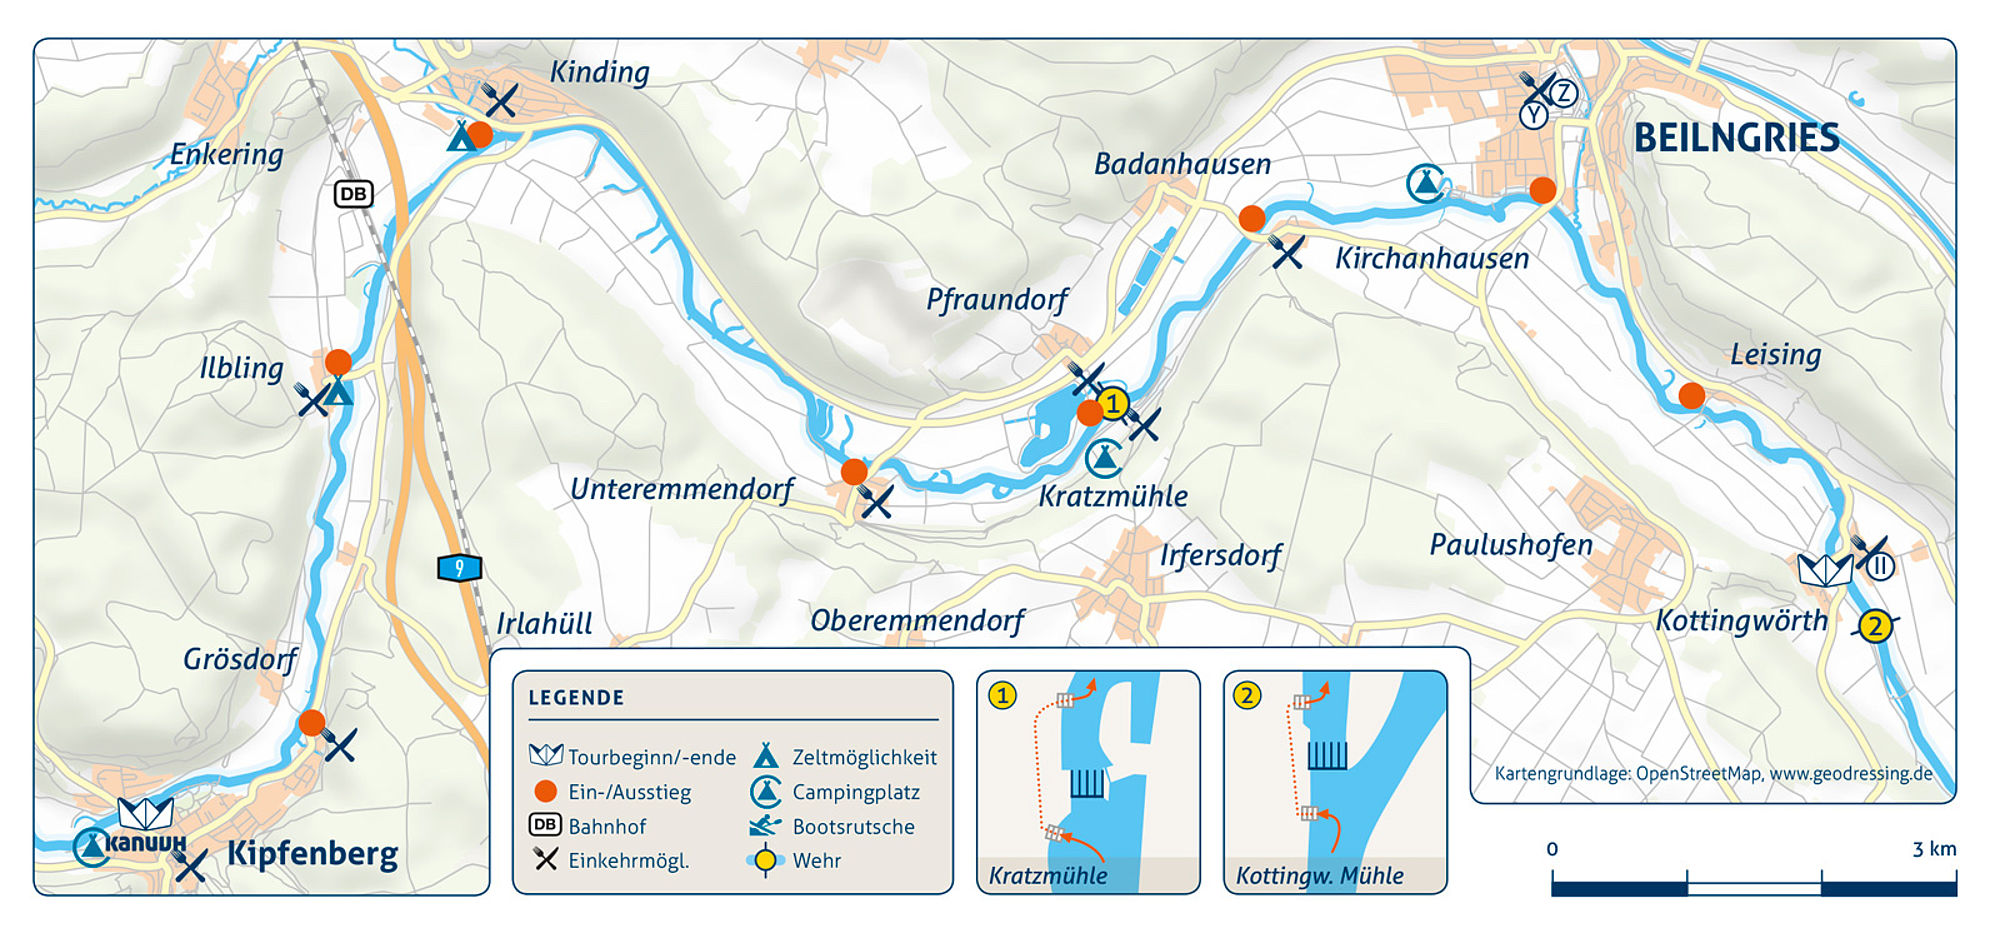 Flusskarte der Kanutour von Kipfenberg nach Kottingwörth